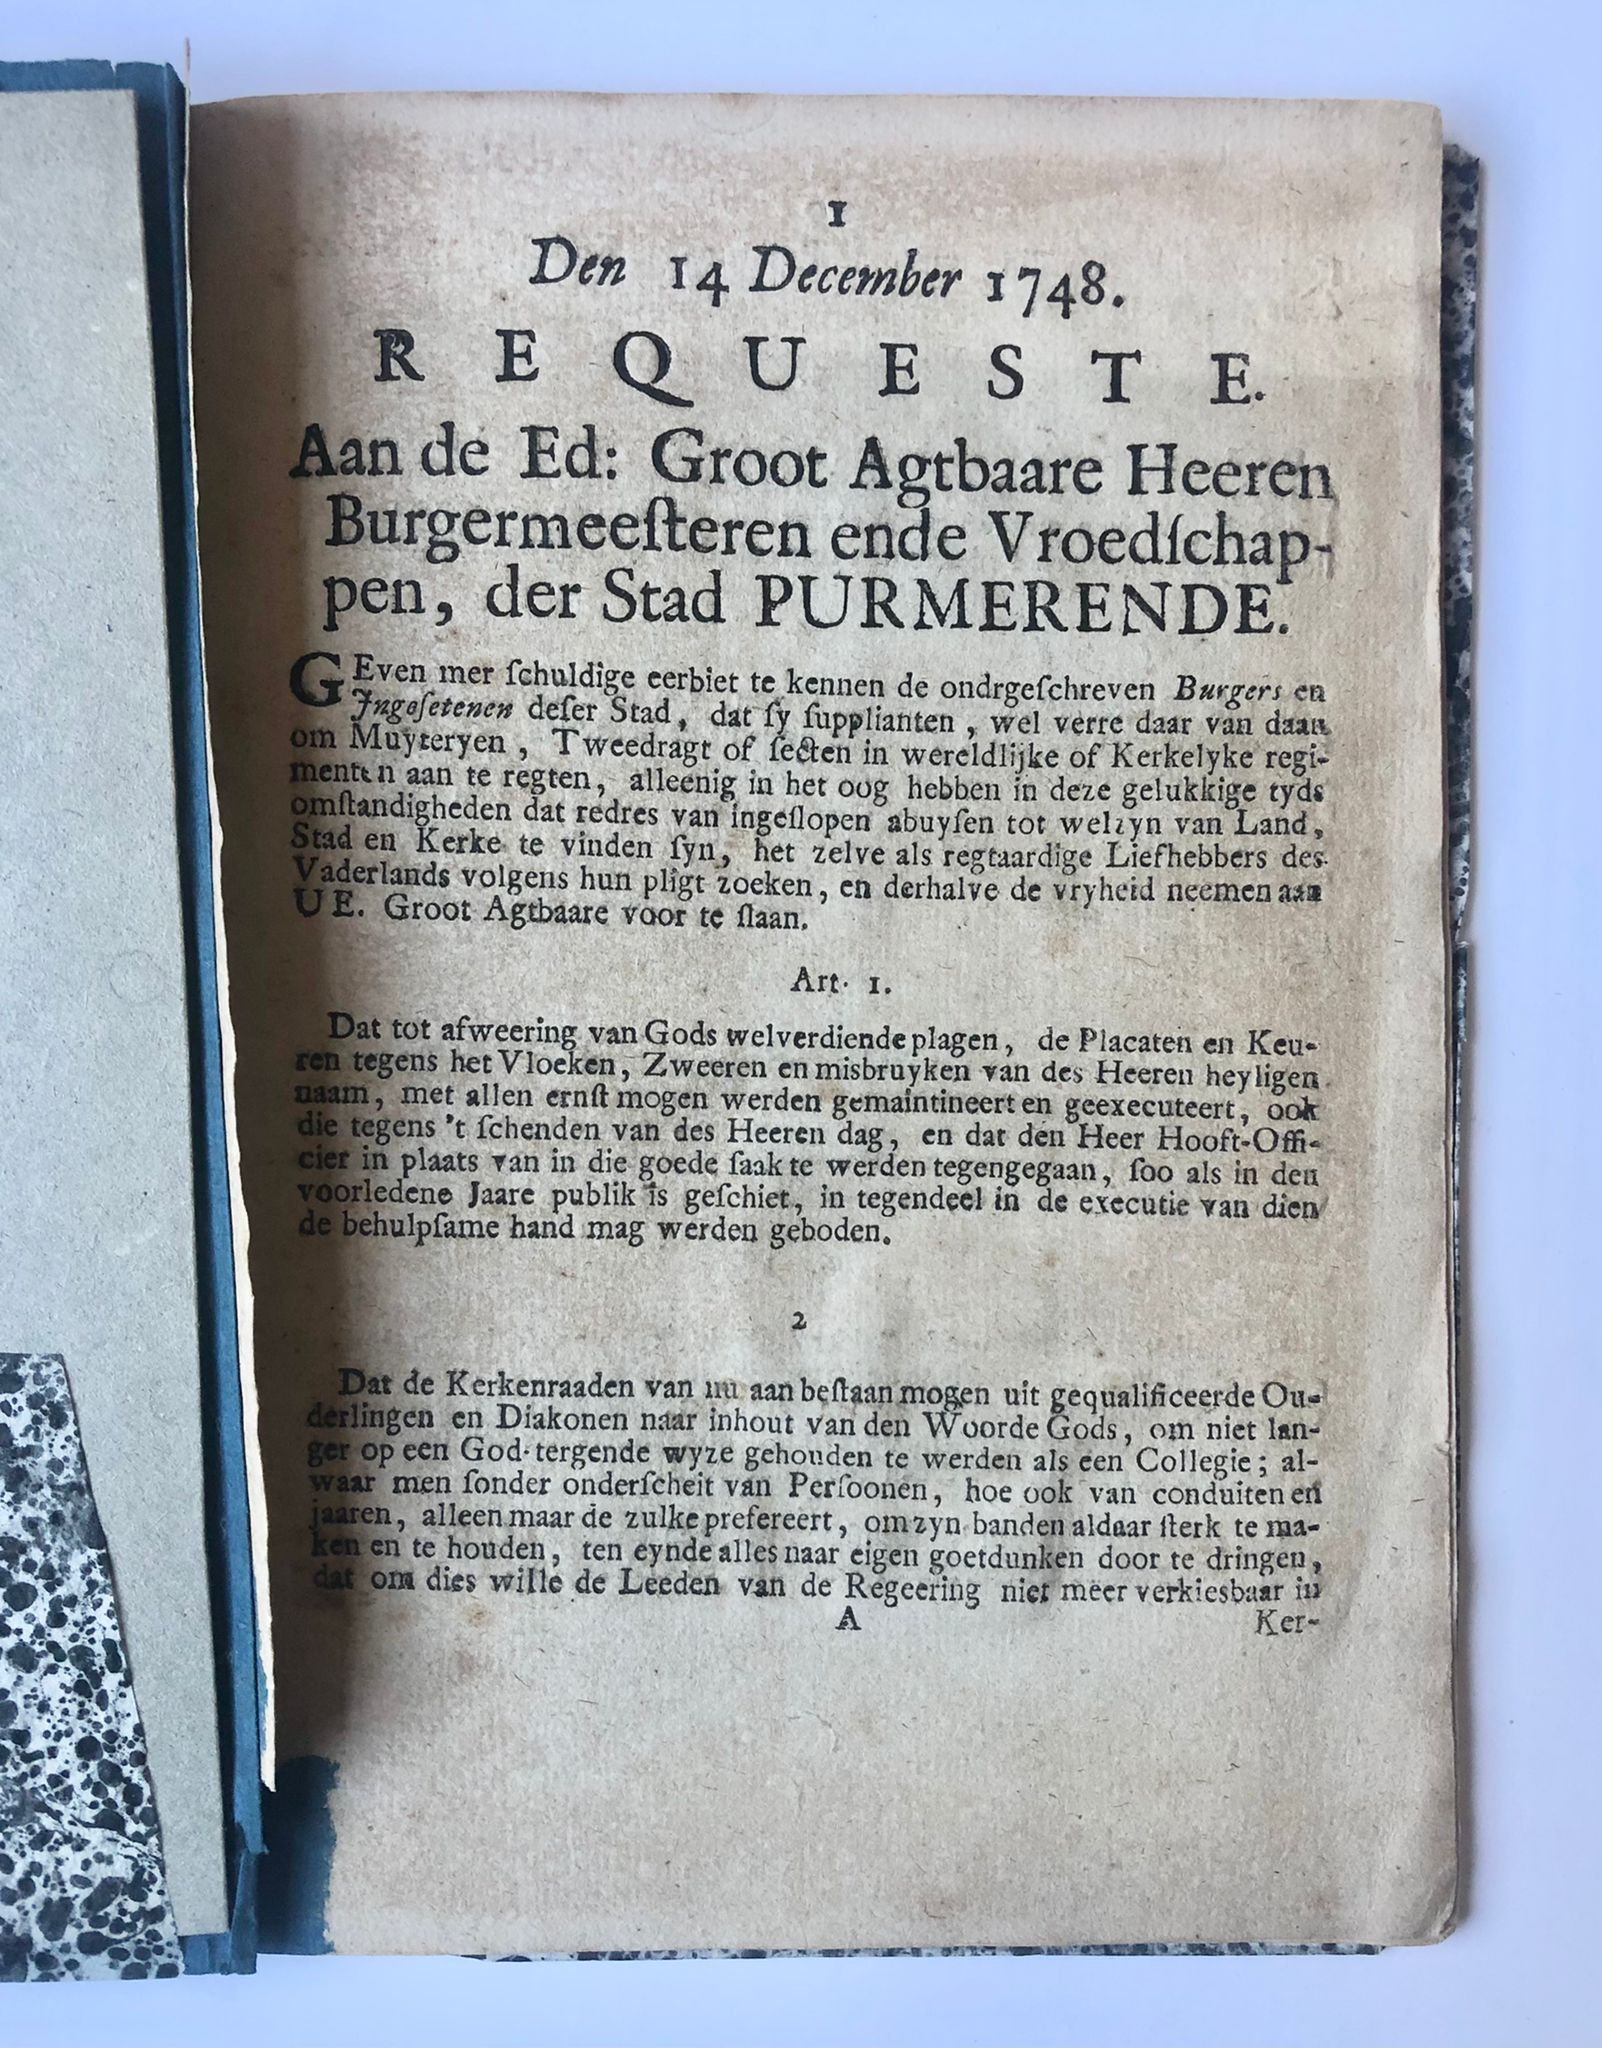 [Rare pamphlet, Purmerend, Noord-Holland, [1748]] Requeste. Aan de Ed: Groot Agtbaare Heeren Burgemeesteren ende Vroedschappen, der Stad Purmerende. Den 14 December 1748, 7 pp.